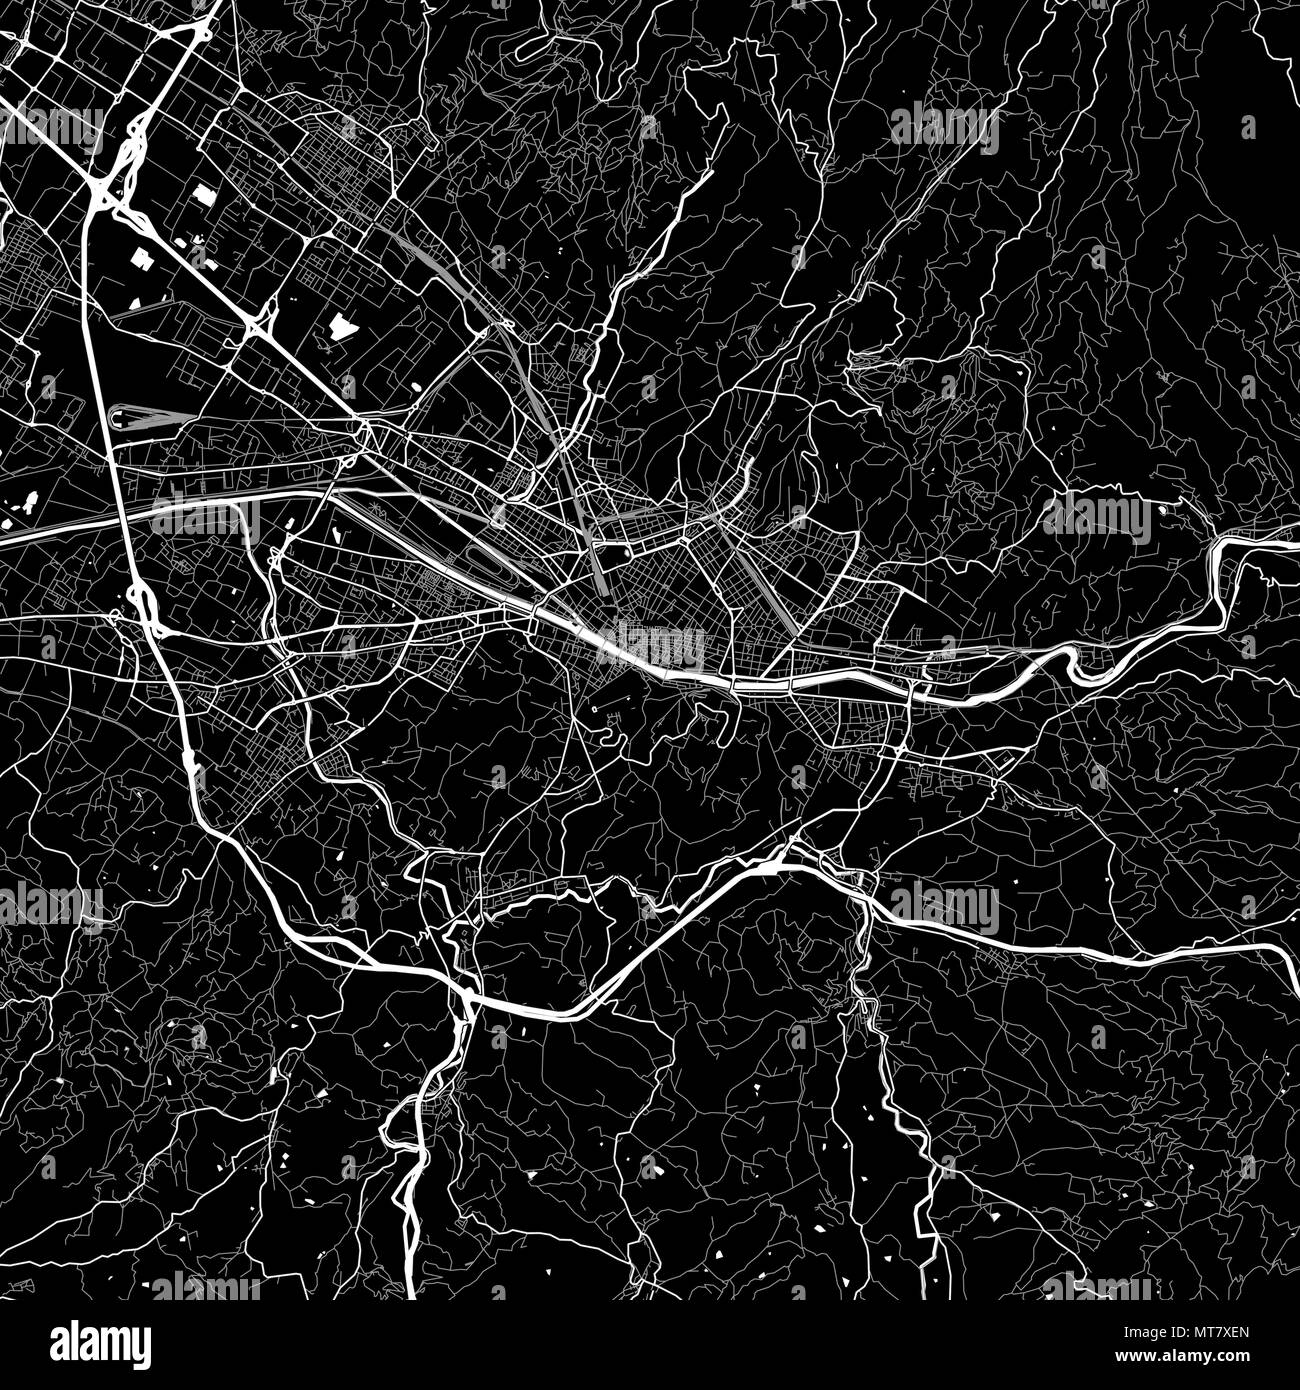 Carte de la région de Florence, Italie. Fond sombre version pour l'infographie et des projets de marketing. Cette carte de Florence, Toscane, contient des monuments typiques Illustration de Vecteur